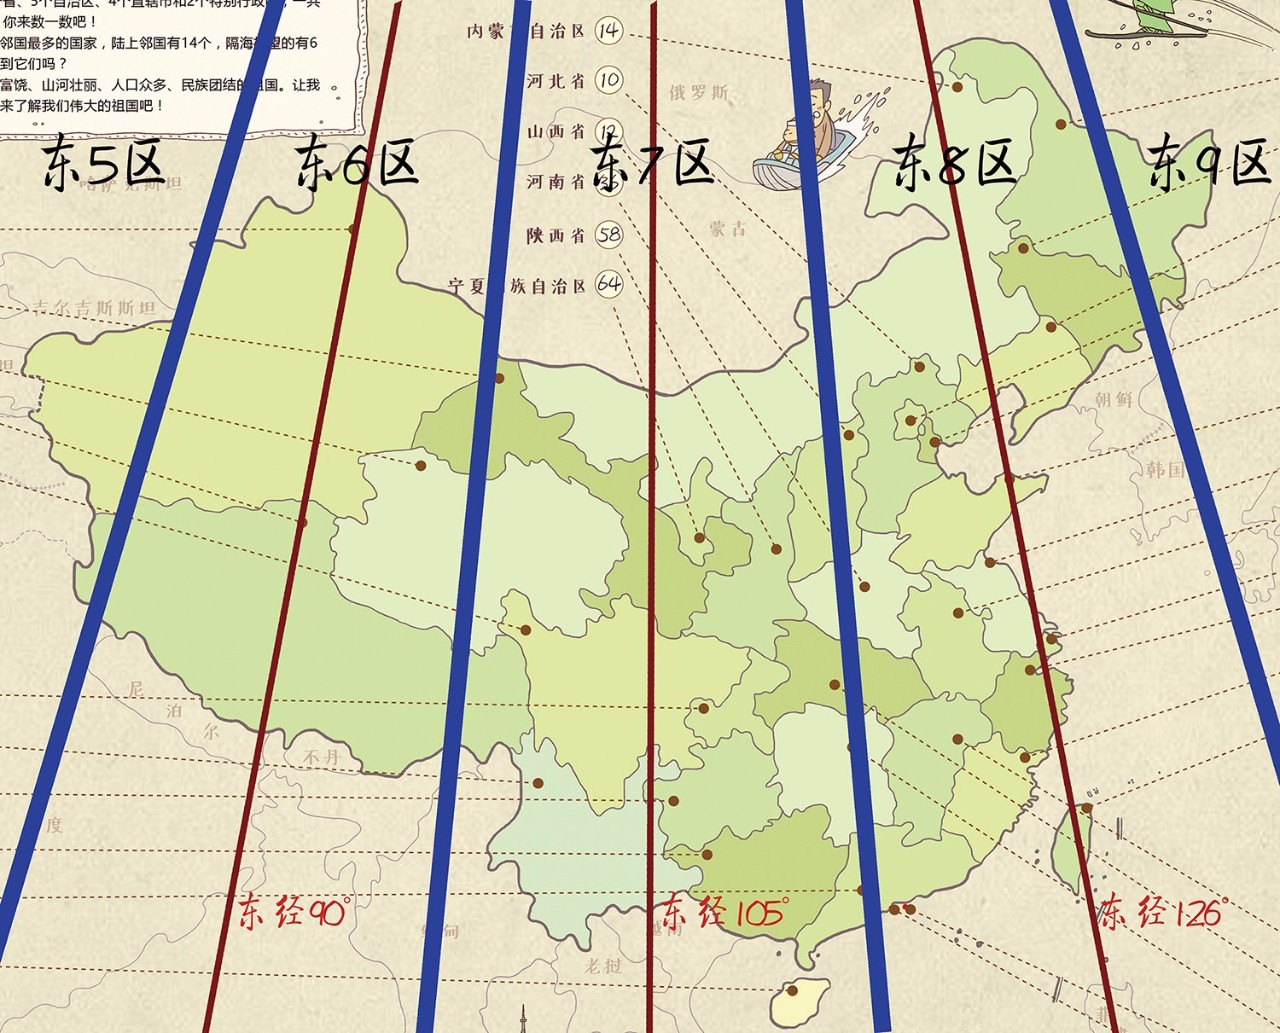 虽然中国统一使用北京时间,按照东加西减的规律,北京和新疆时差为2